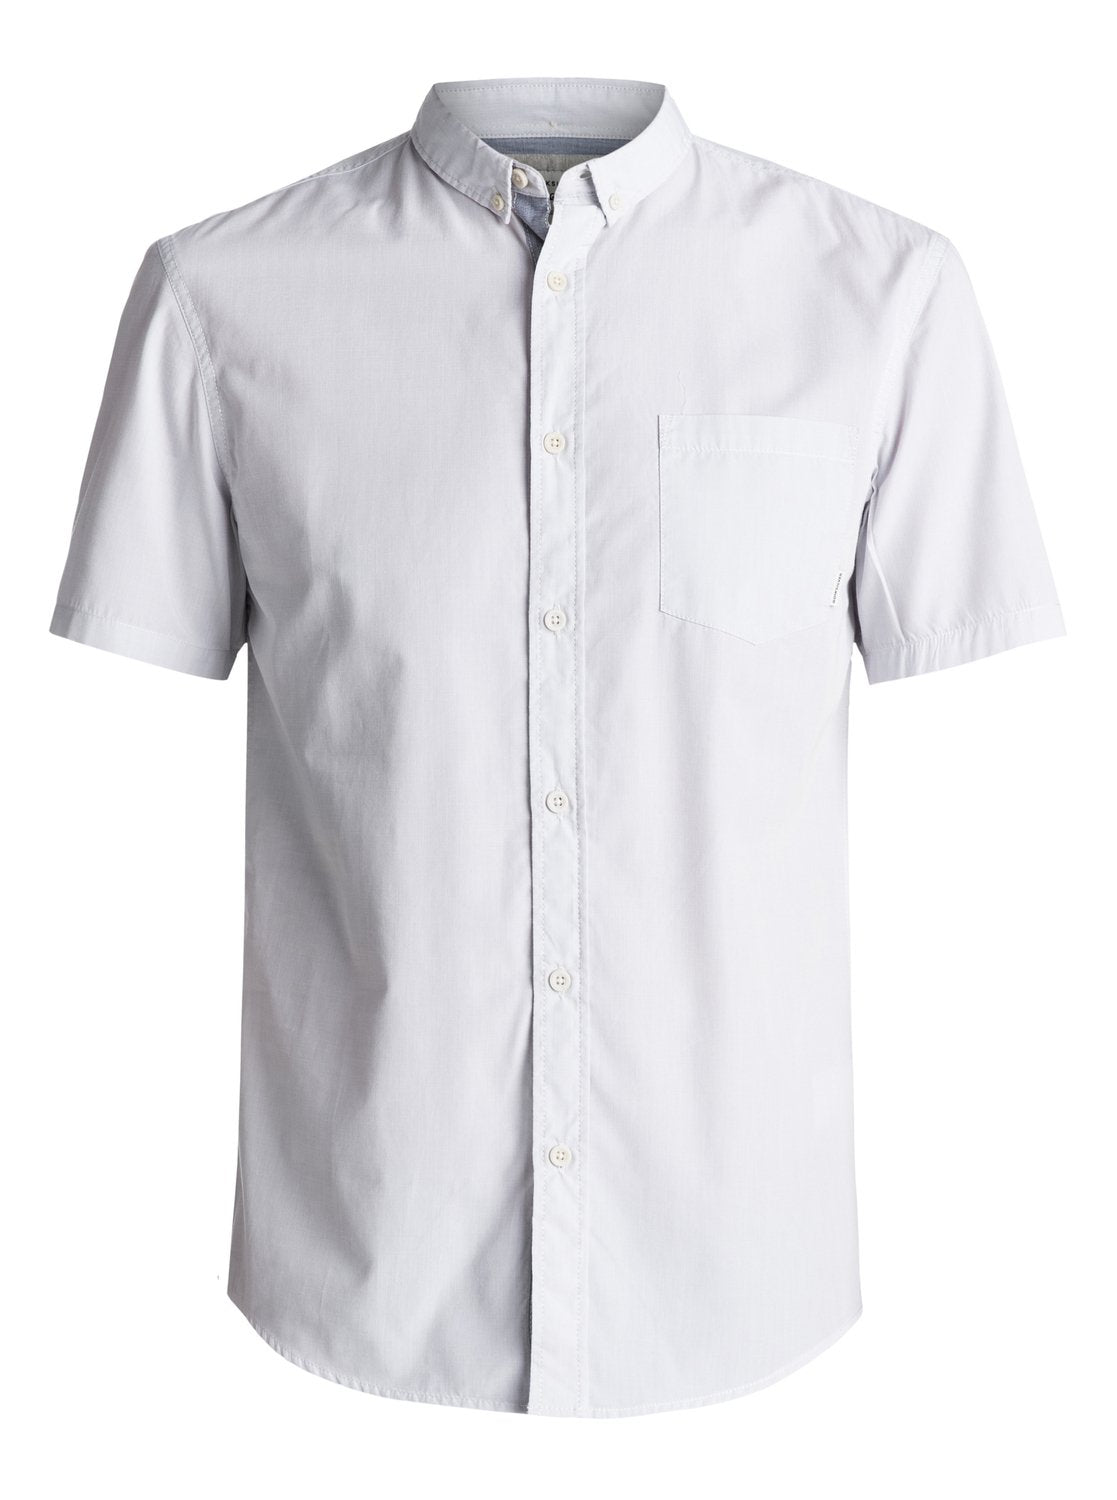 Quiksilver Everyday Wilsden S/S Woven Shirt, SZH0, M